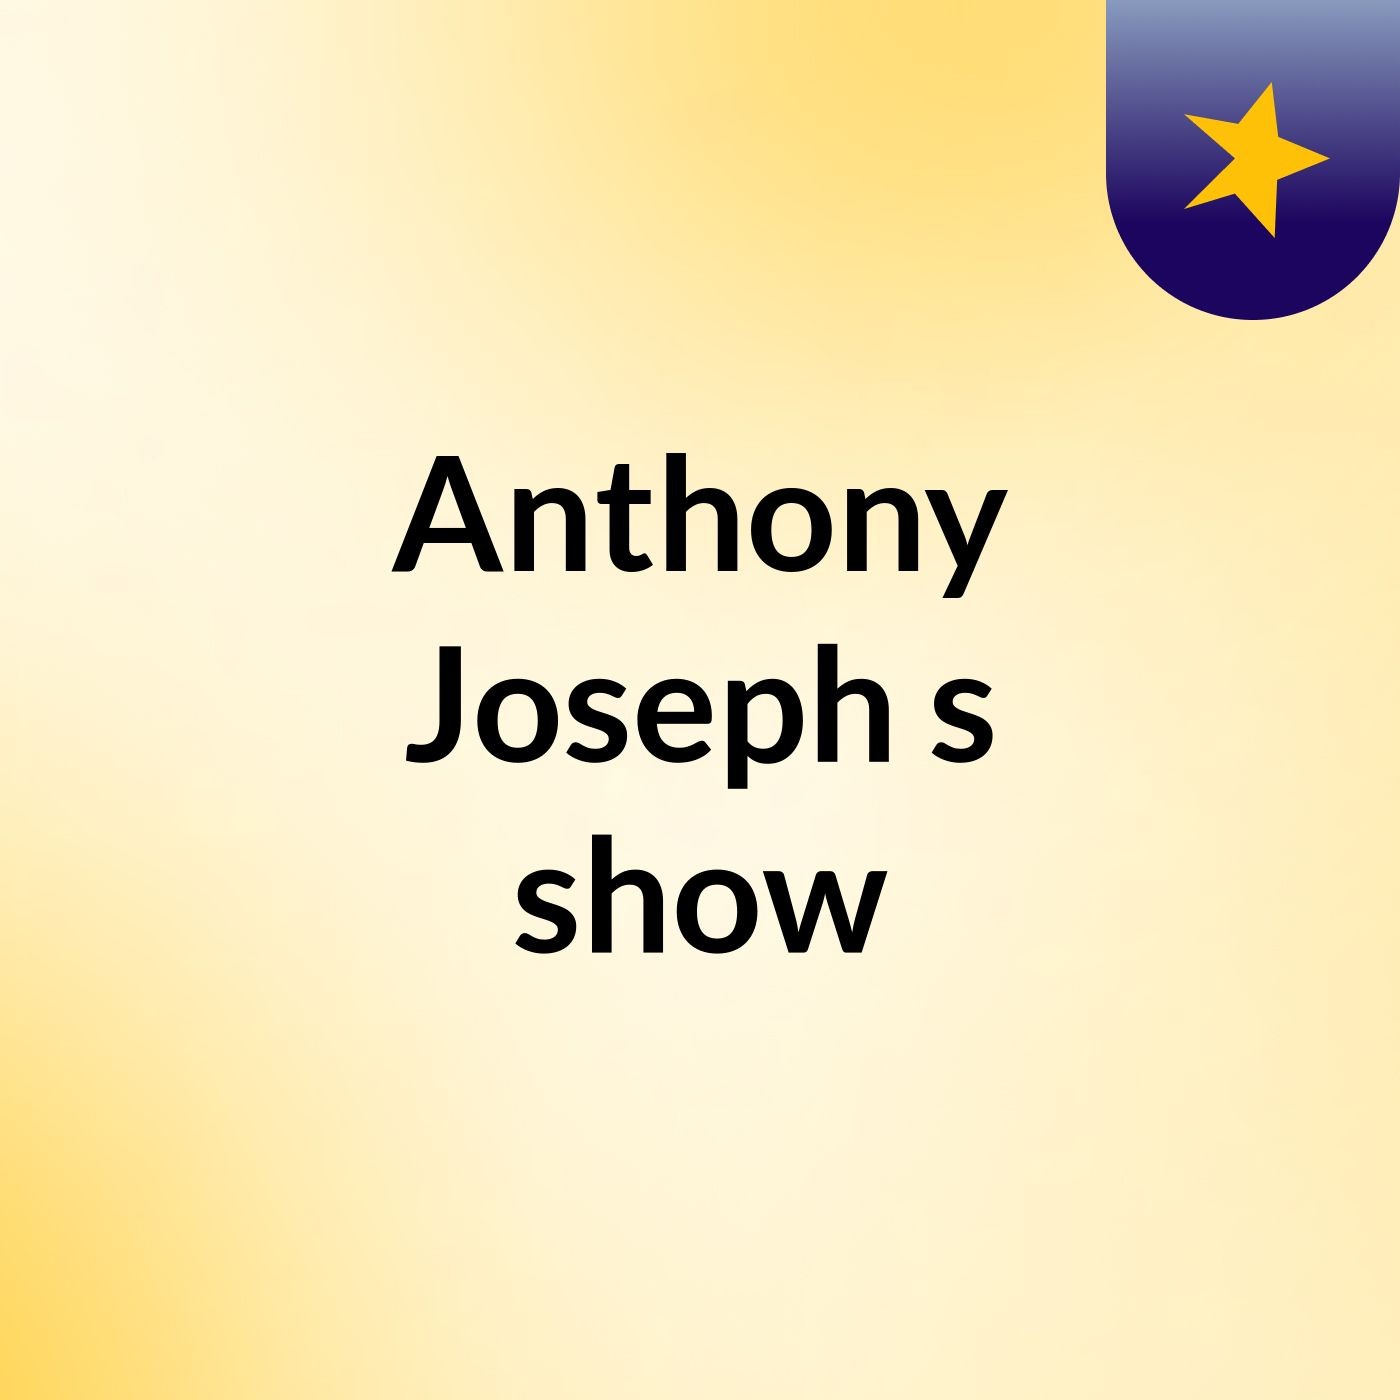 Anthony Joseph's show